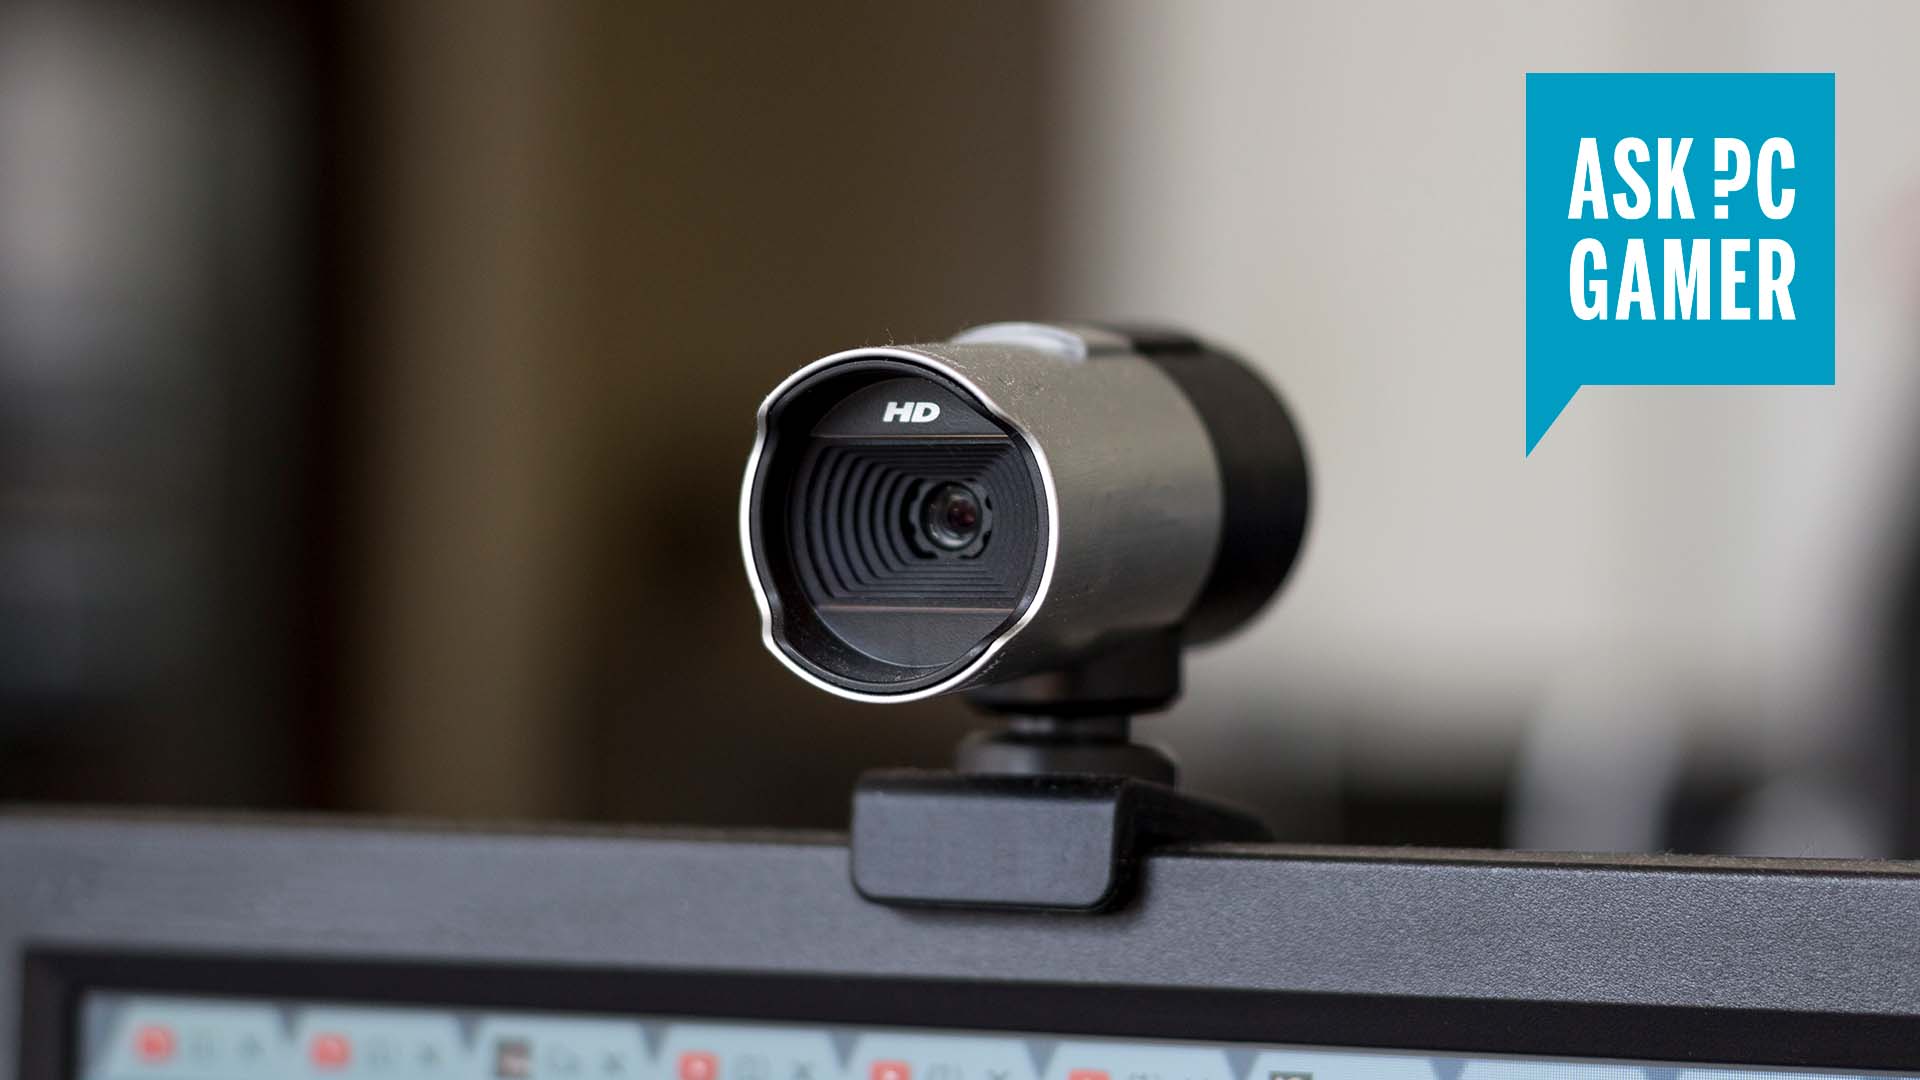 Does lighting affect fps on webcams?